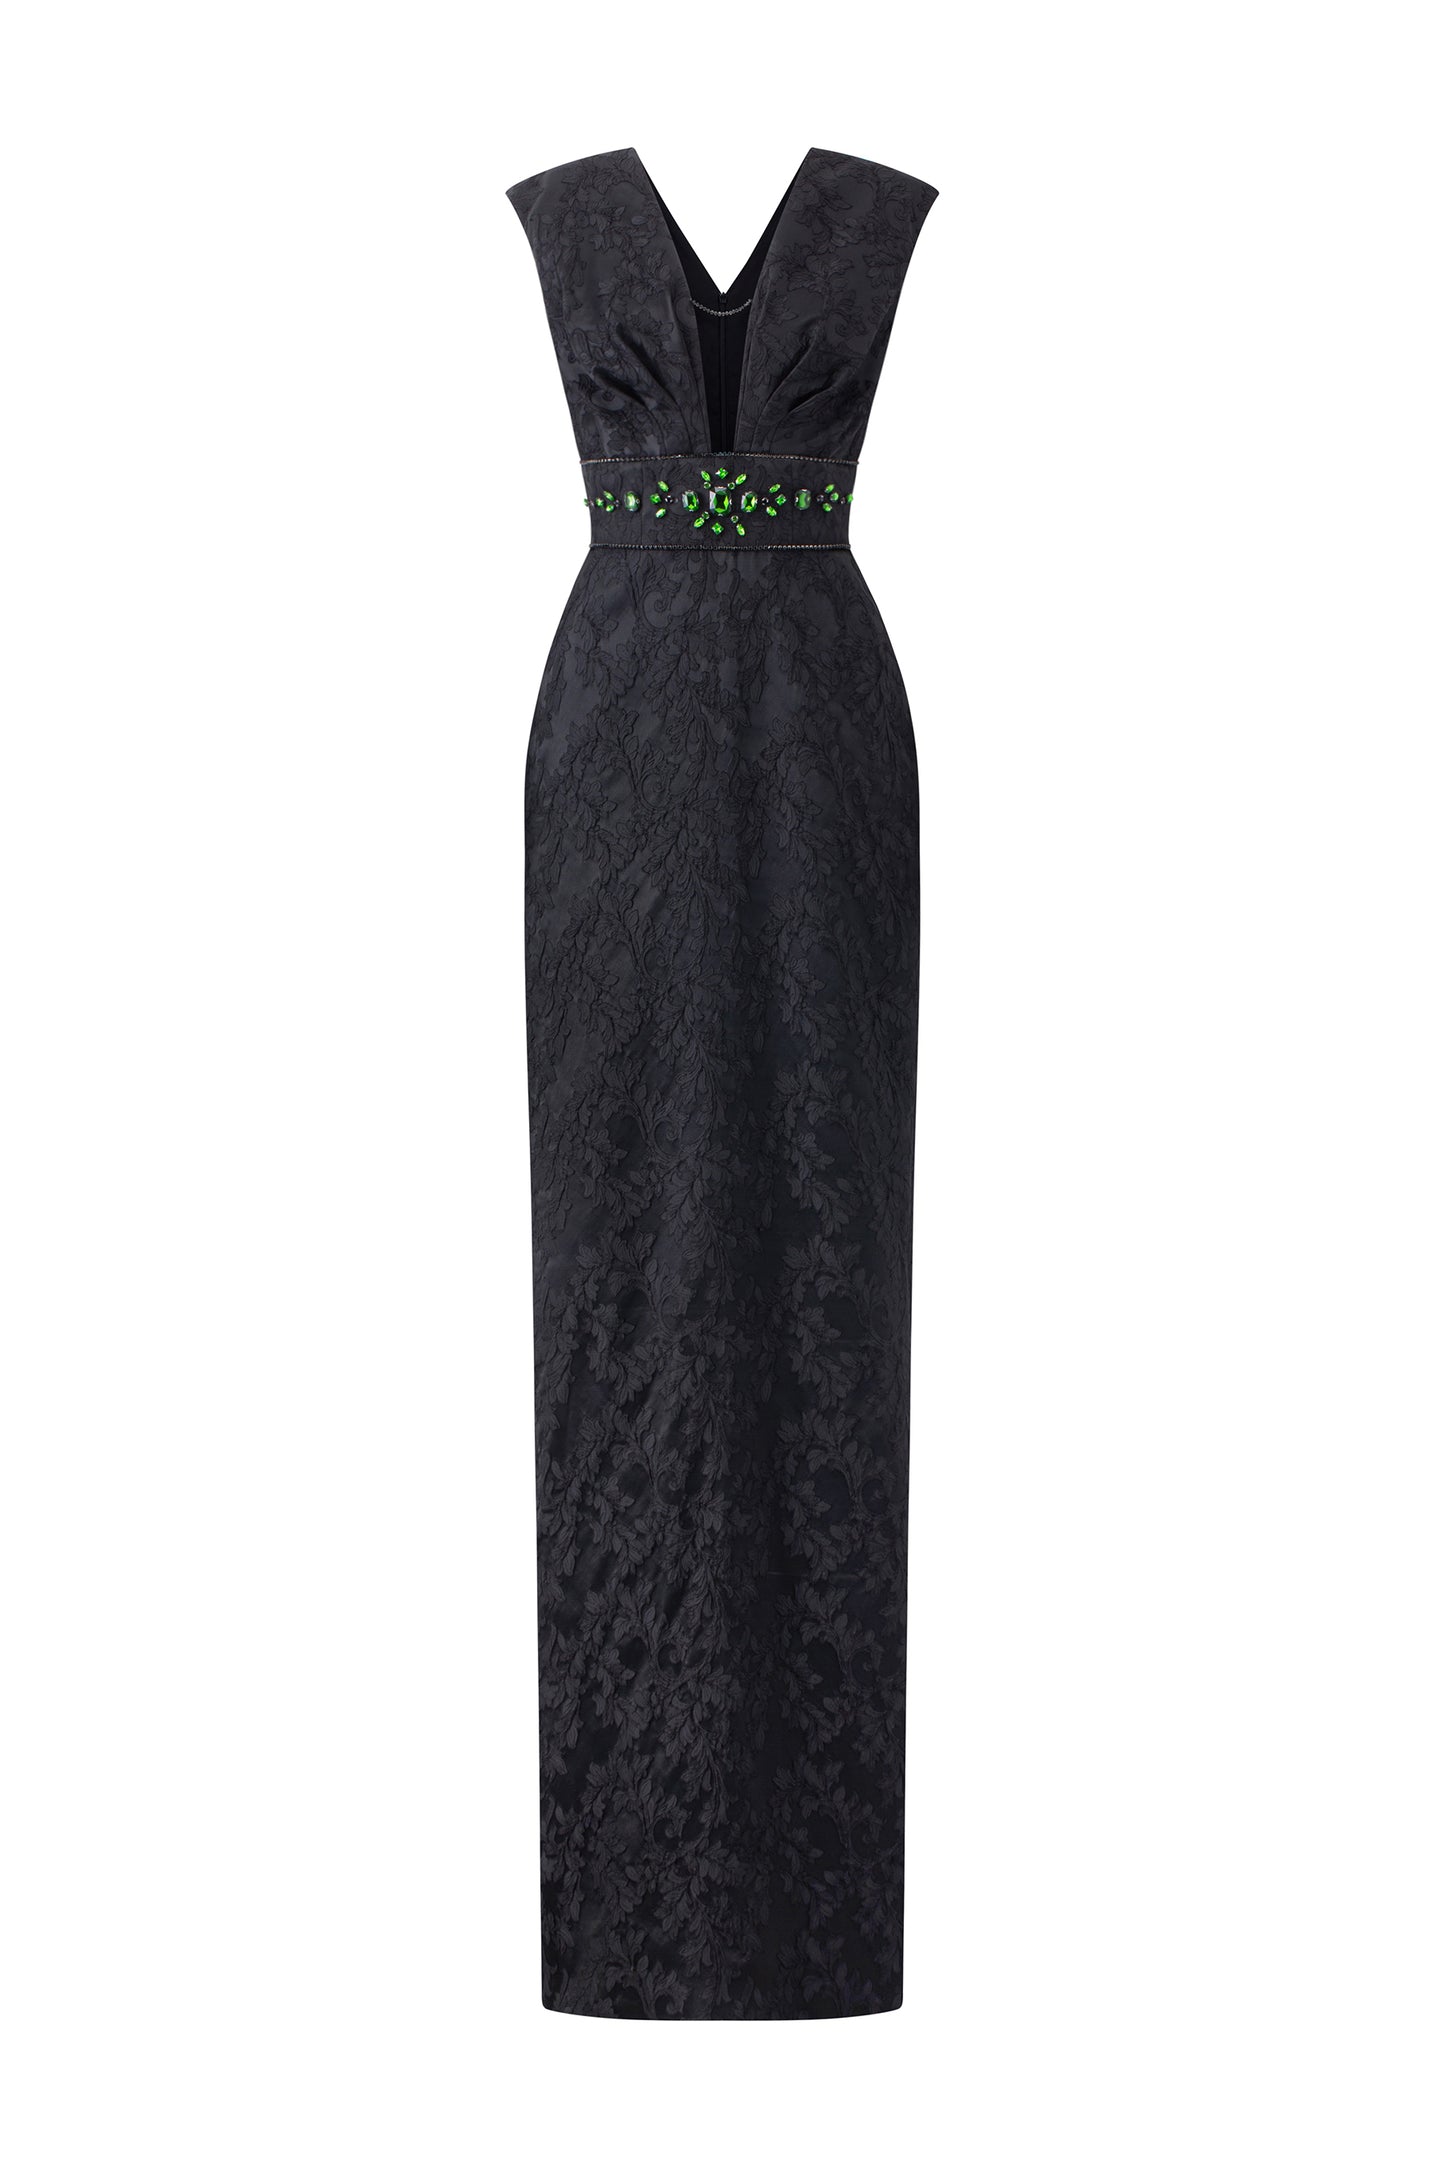 V-Cut Neck Black Gown With Embellished Waist Line